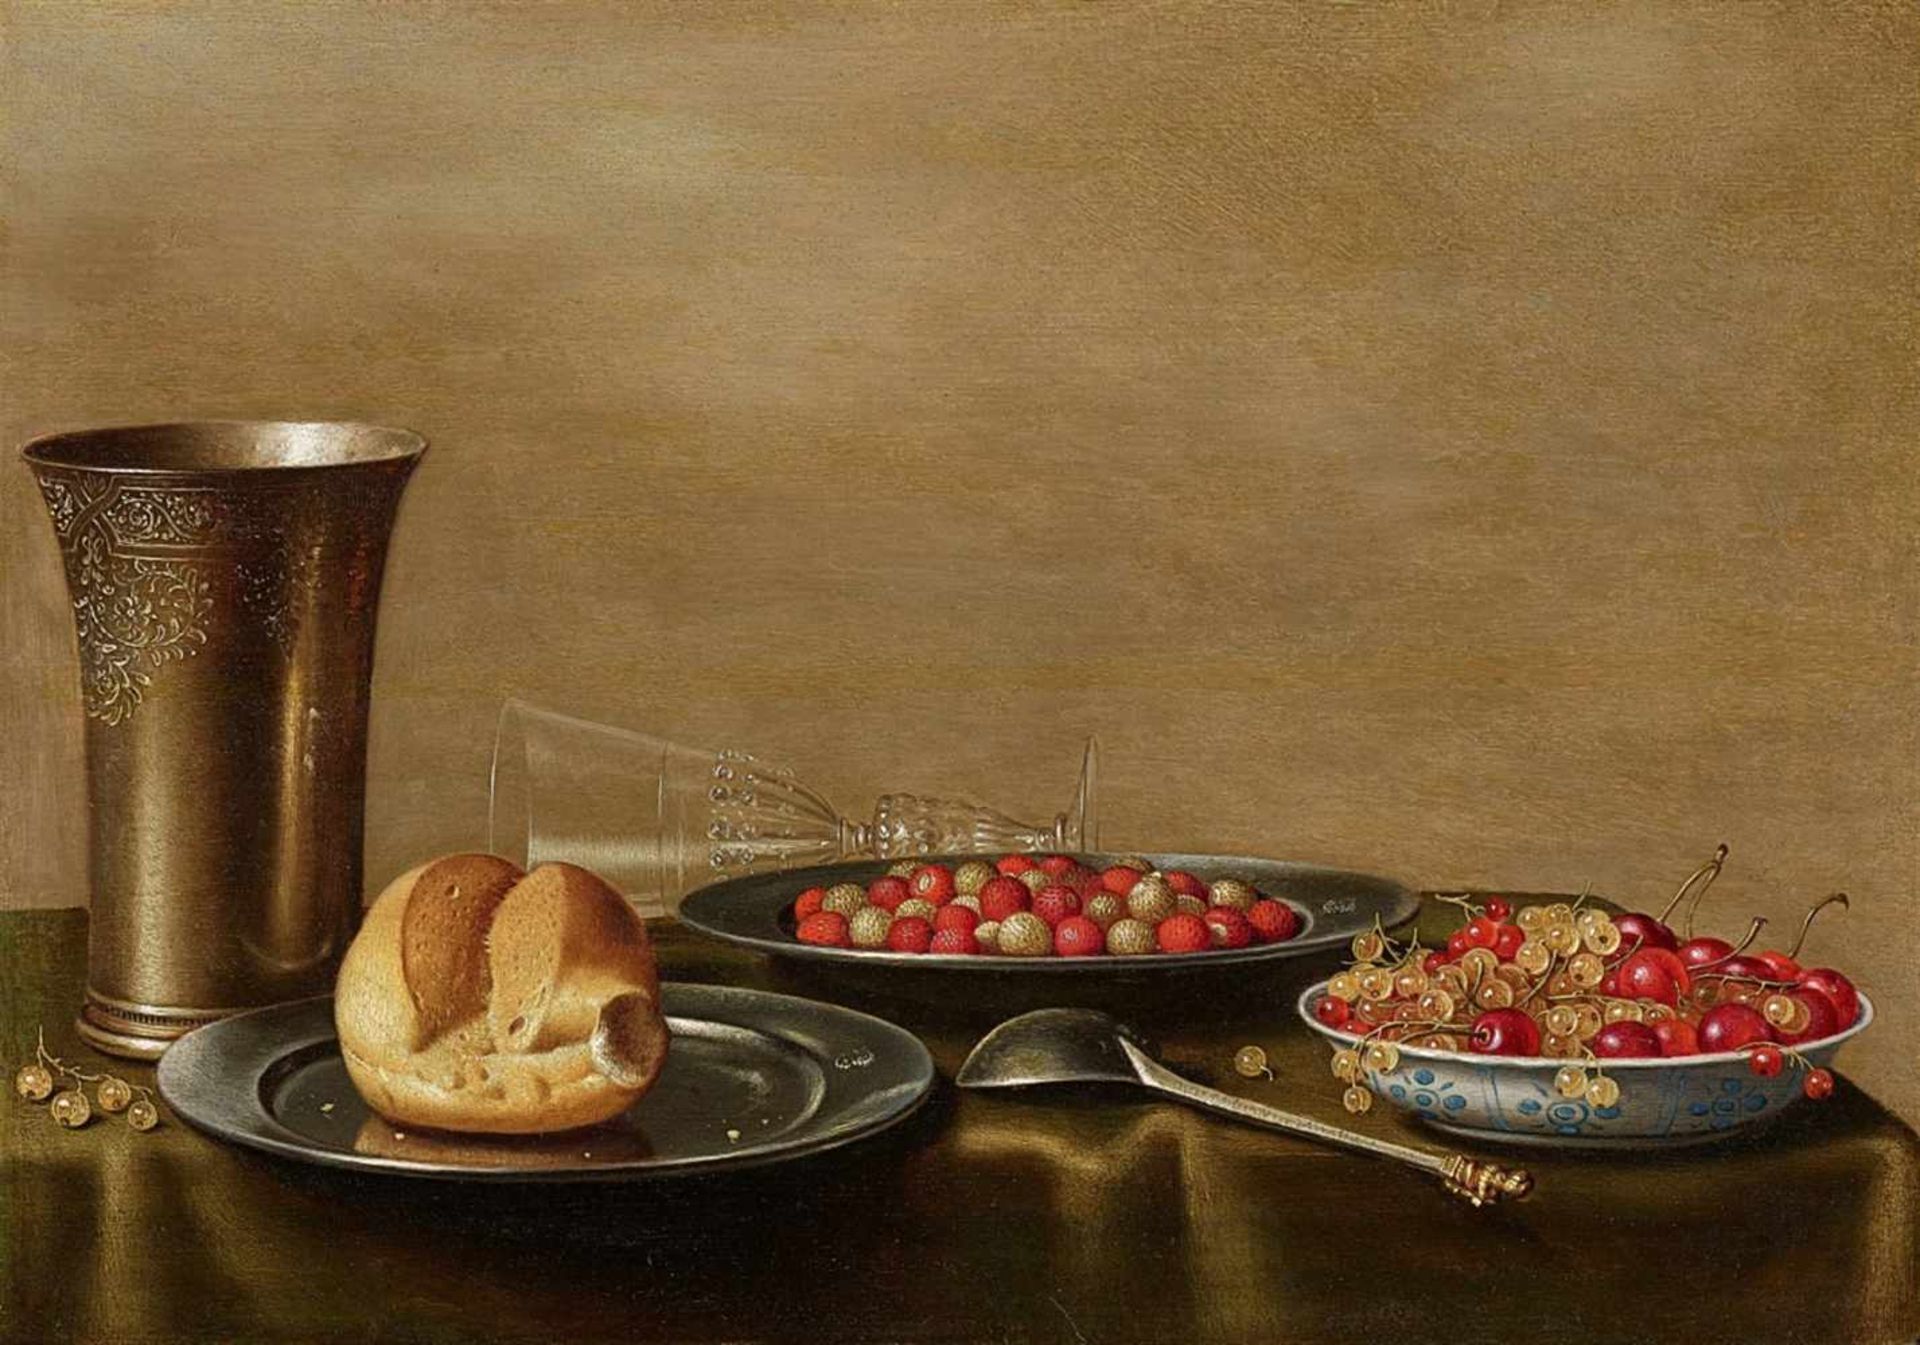 Floris van SchootenStillleben mit silbernem Becher, Zinnteller mit Brot und Erdbeeren, Wanli-SchÖl